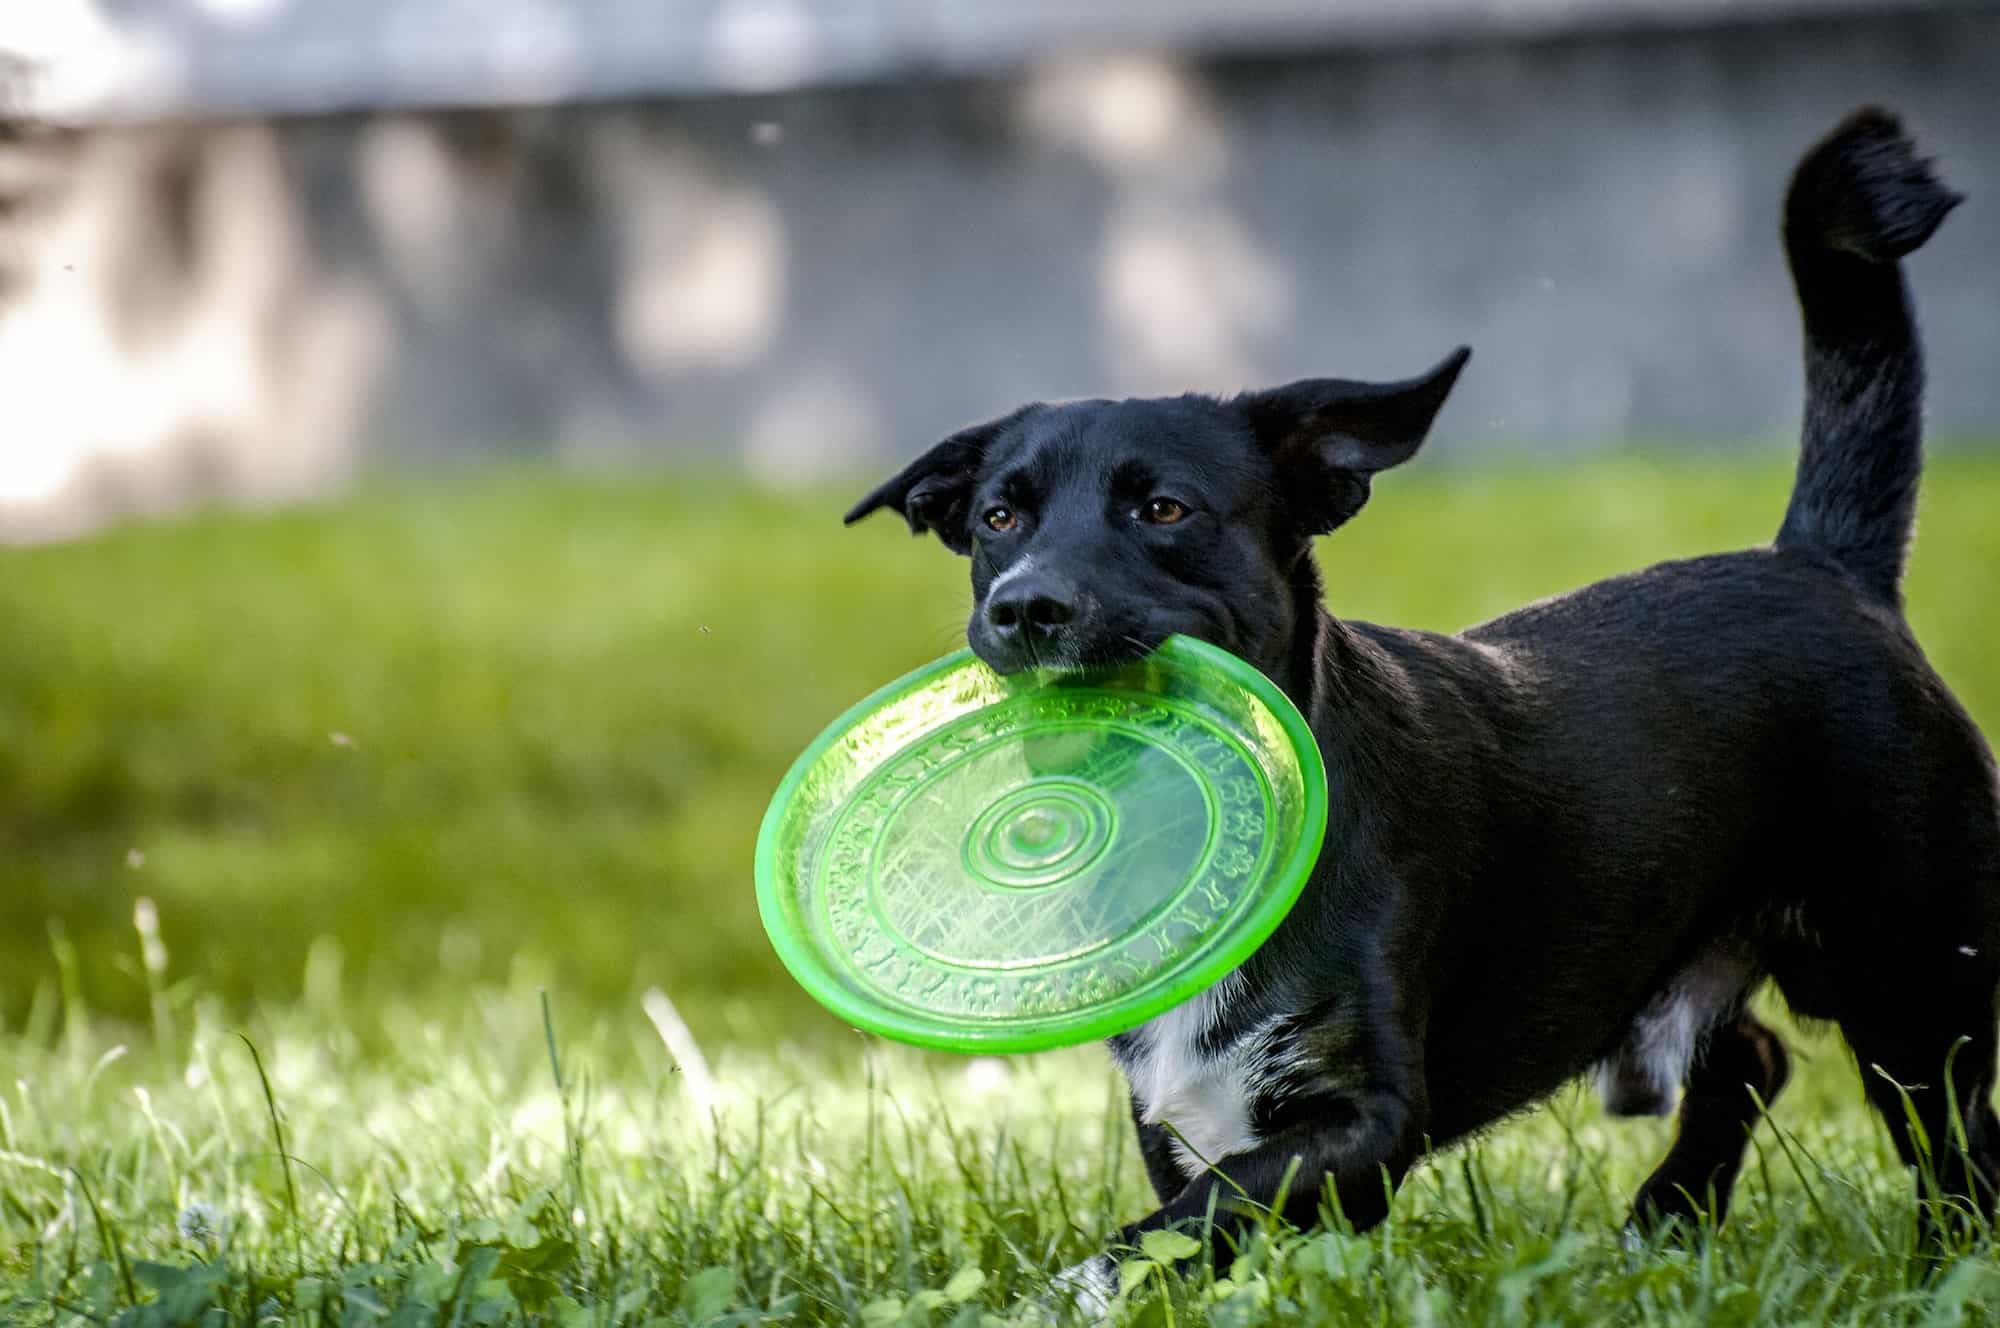 Dog & frisbee